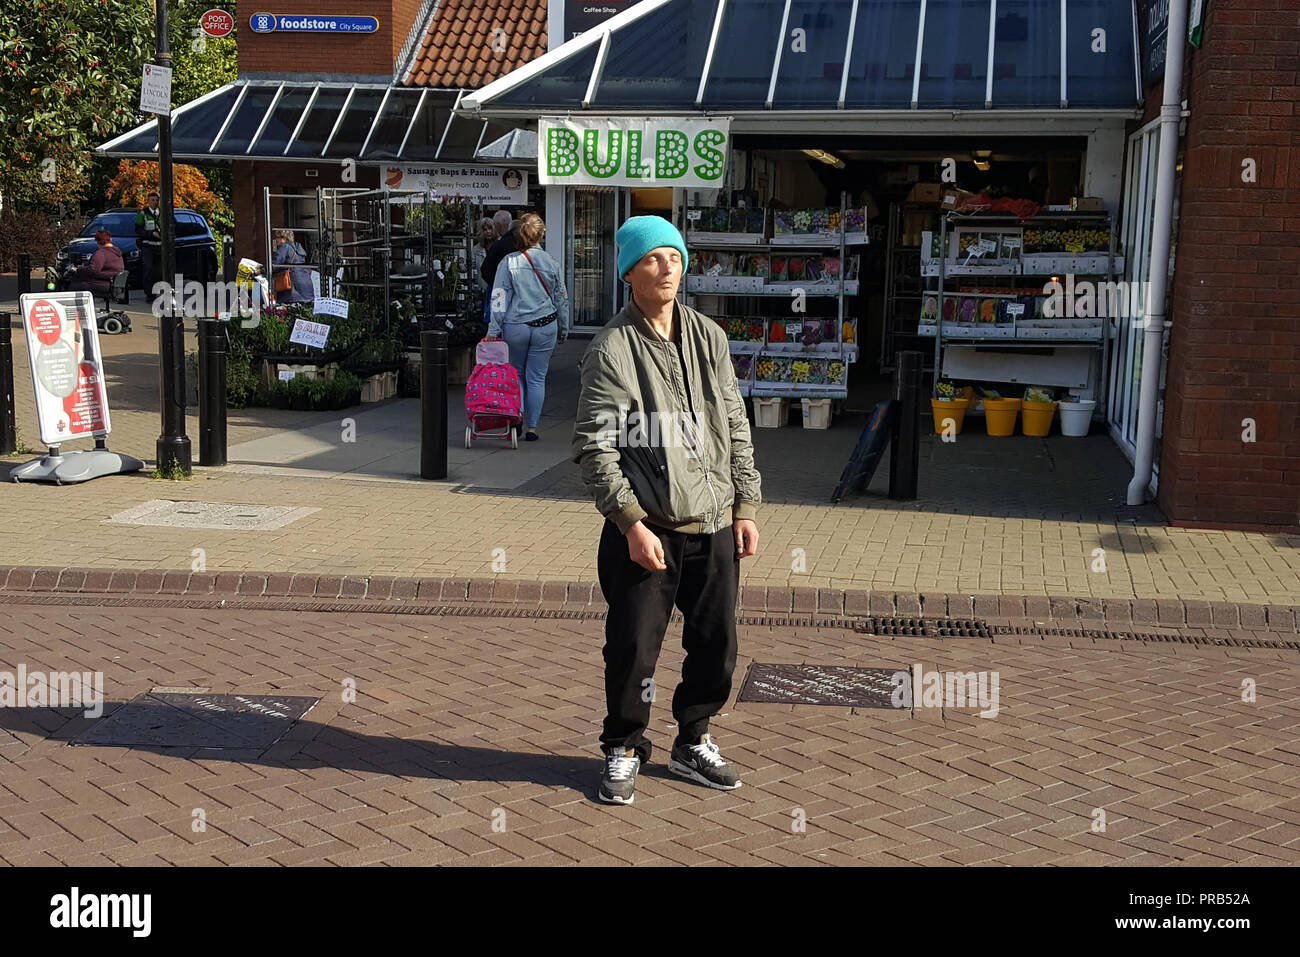 Candida immagine presa su uno smartphone di street photography. Un uomo senza tetto eventualmente sotto l'influenza di 'Spice' Foto Stock